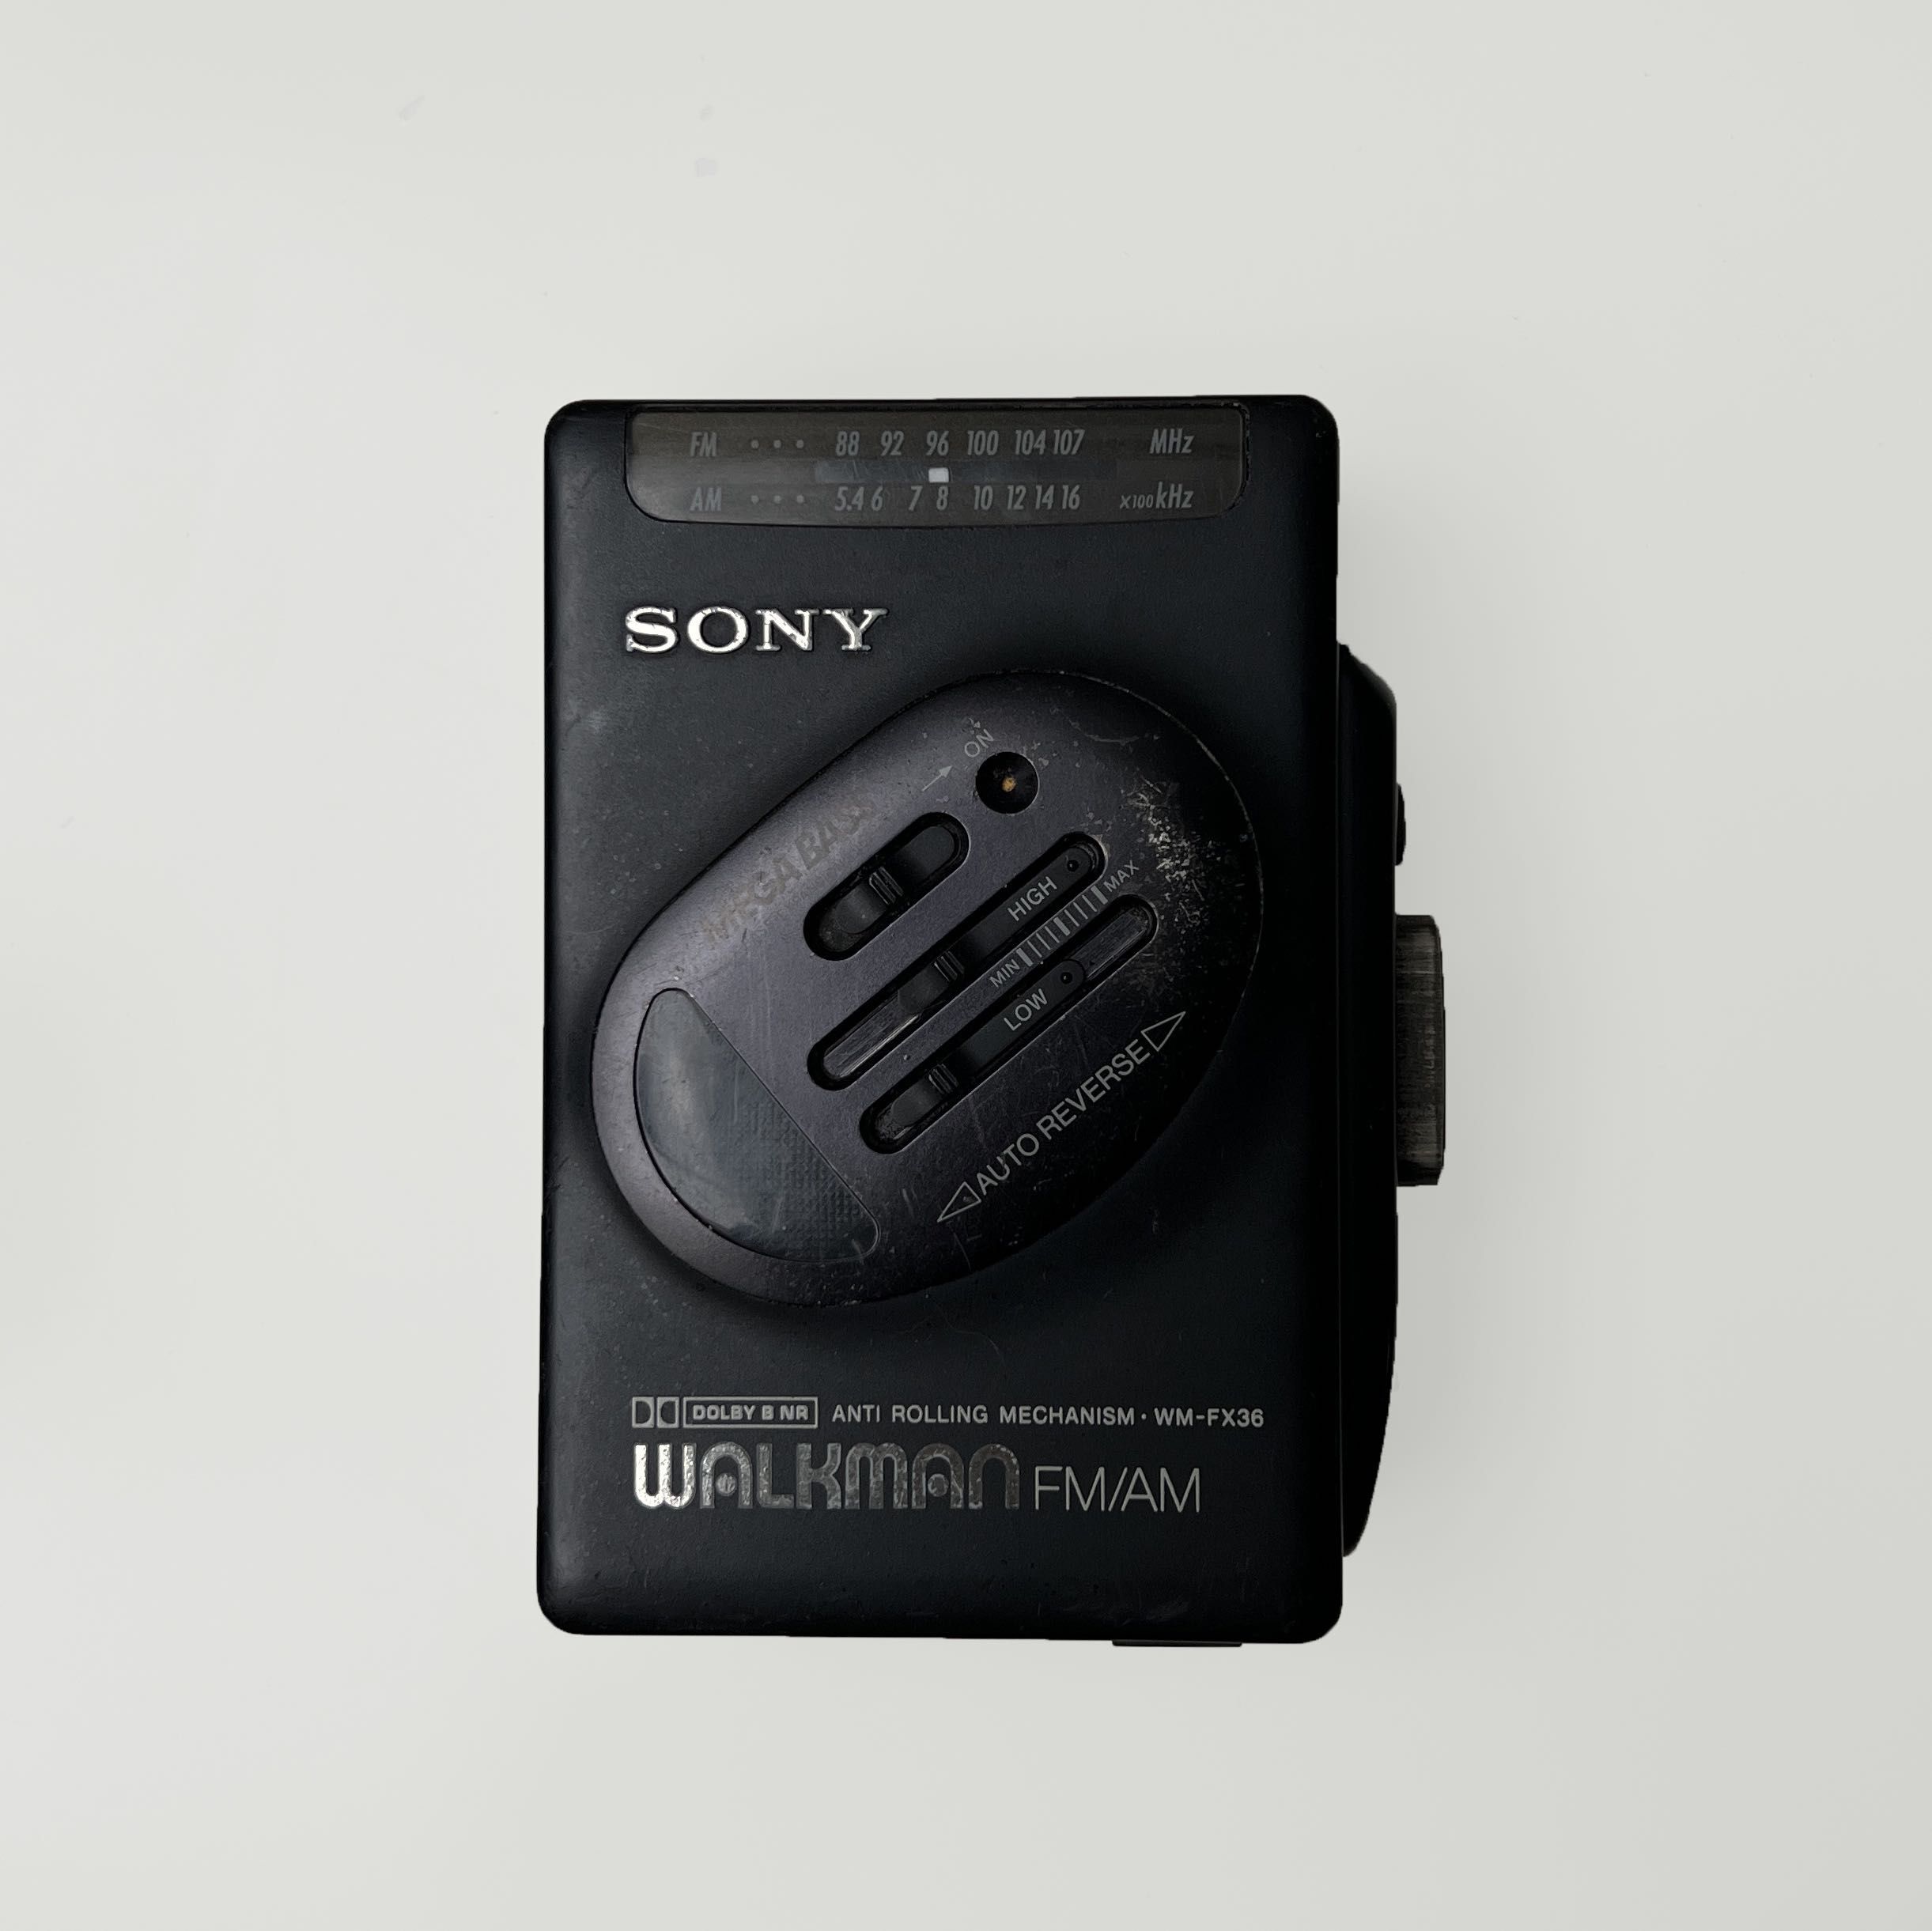 SONY WALKMAN WM-36 1988 Cassette player www.clinicskincare.ir